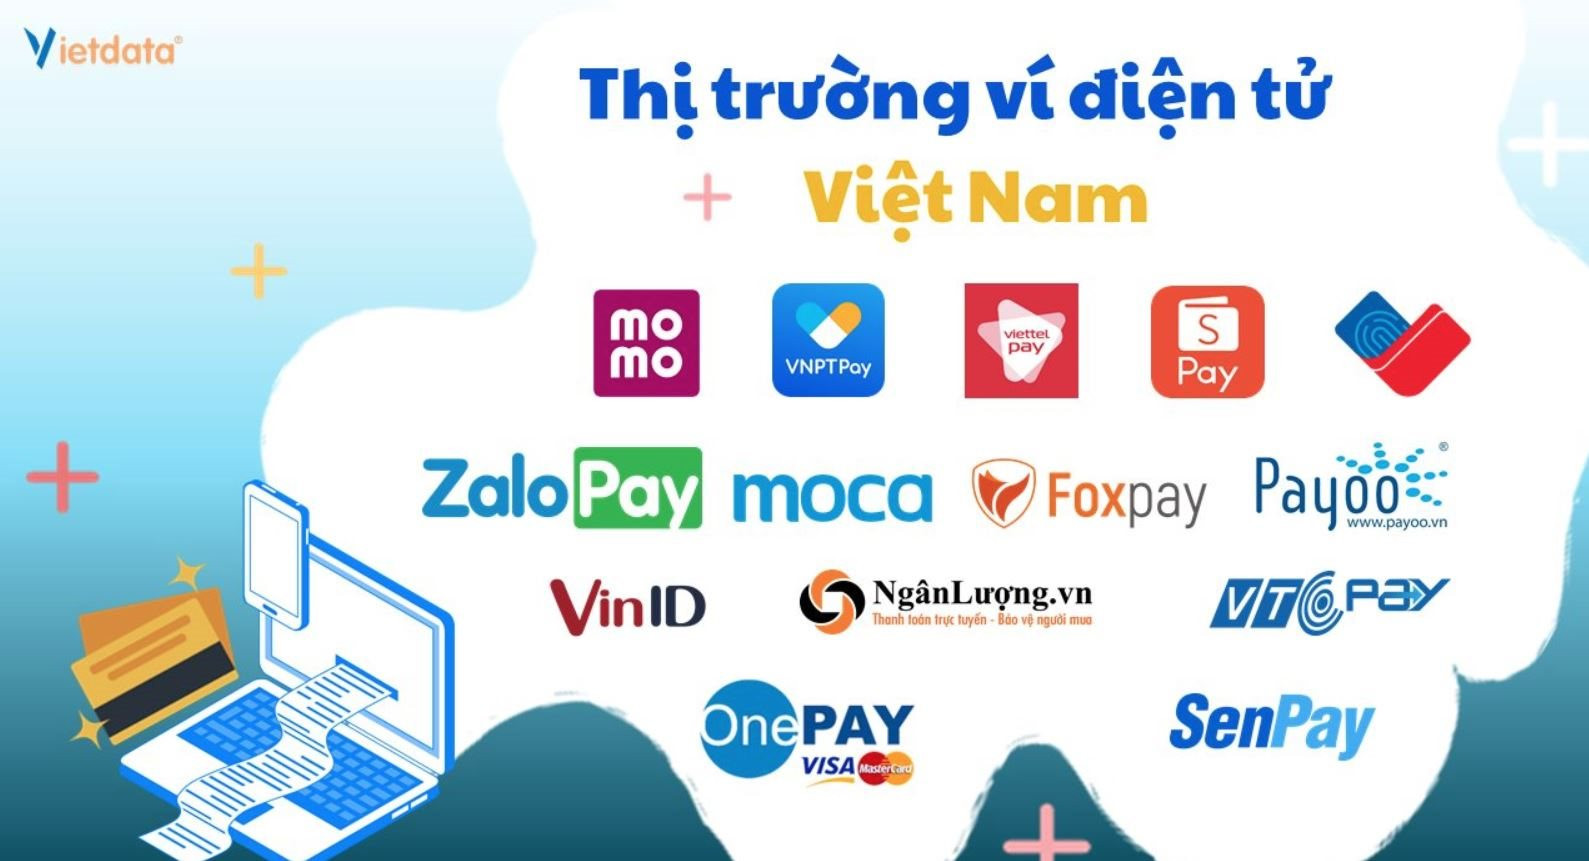 Nhộn nhịp và khốc liệt như thị trường ví điện tử Việt- Ảnh 1.